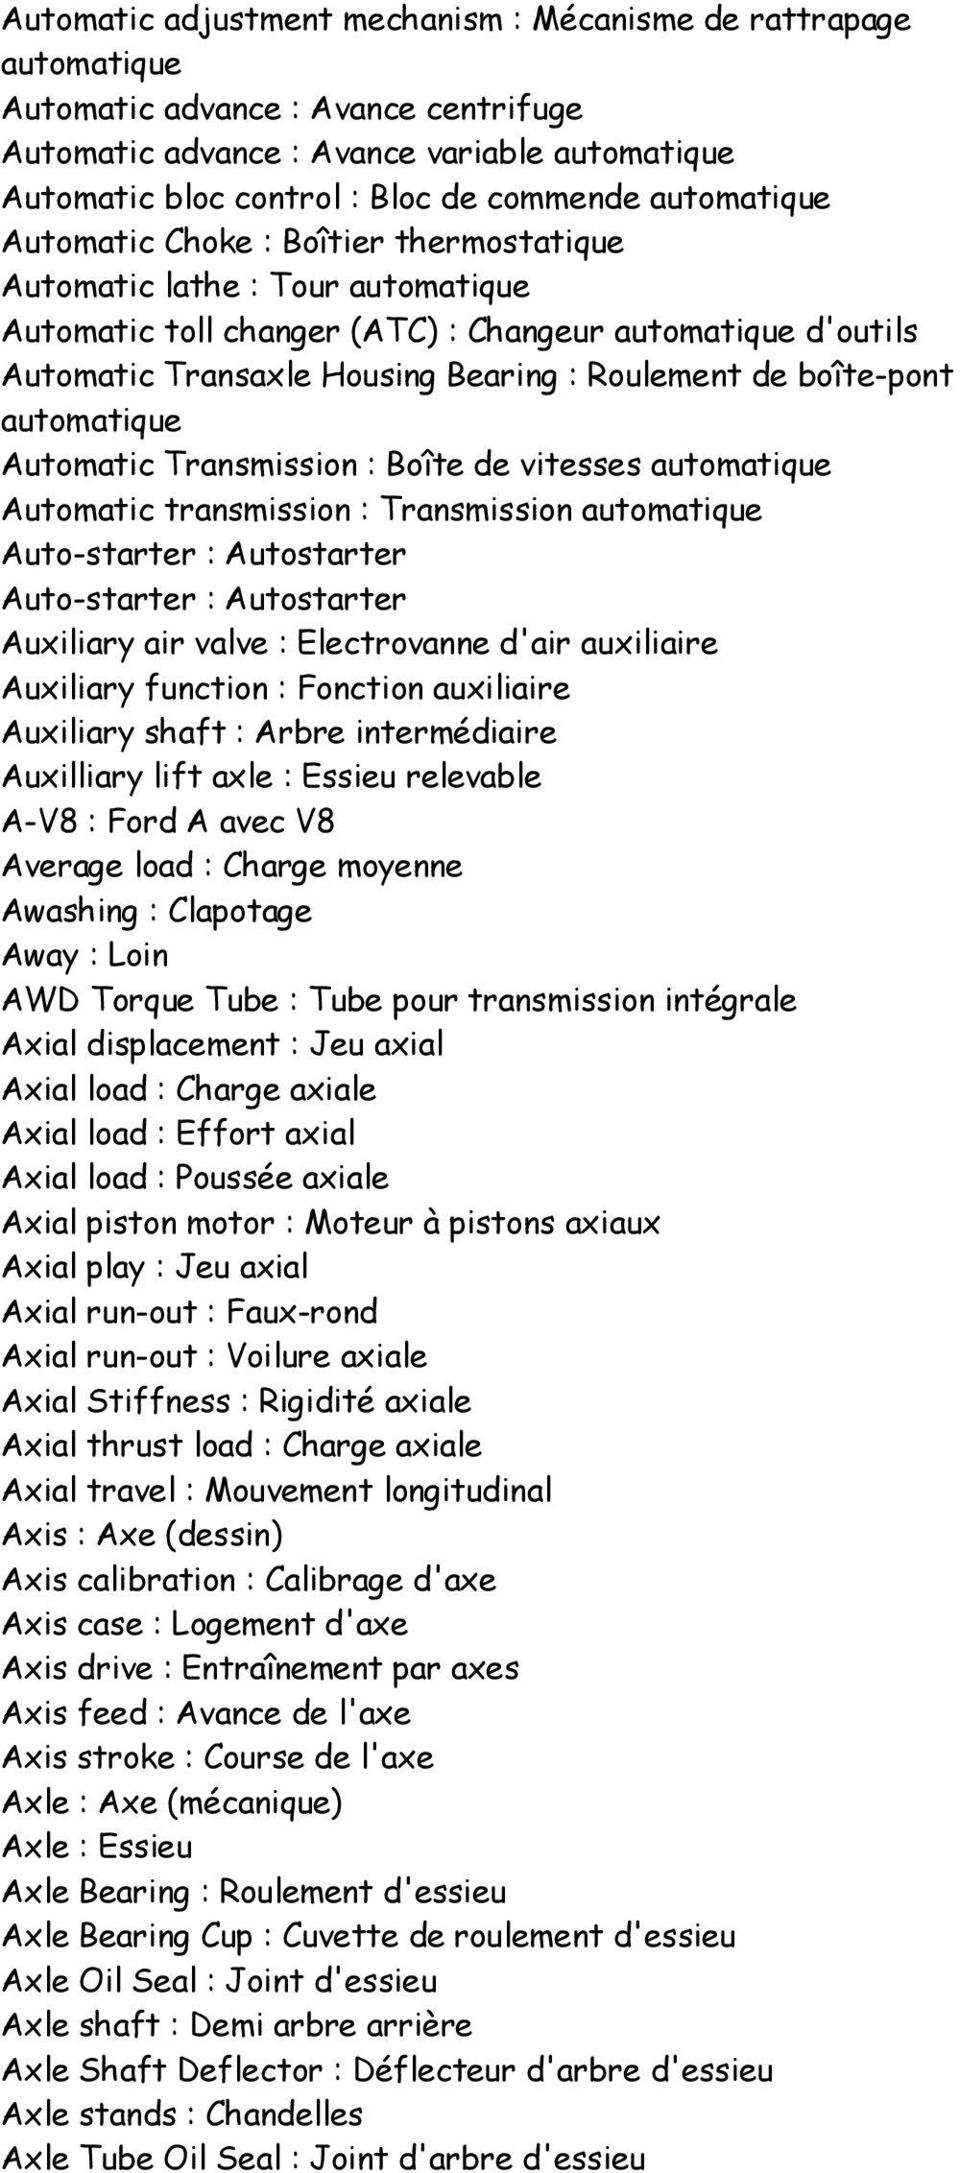 boîte-pont automatique Automatic Transmission : Boîte de vitesses automatique Automatic transmission : Transmission automatique Auto-starter : Autostarter Auto-starter : Autostarter Auxiliary air